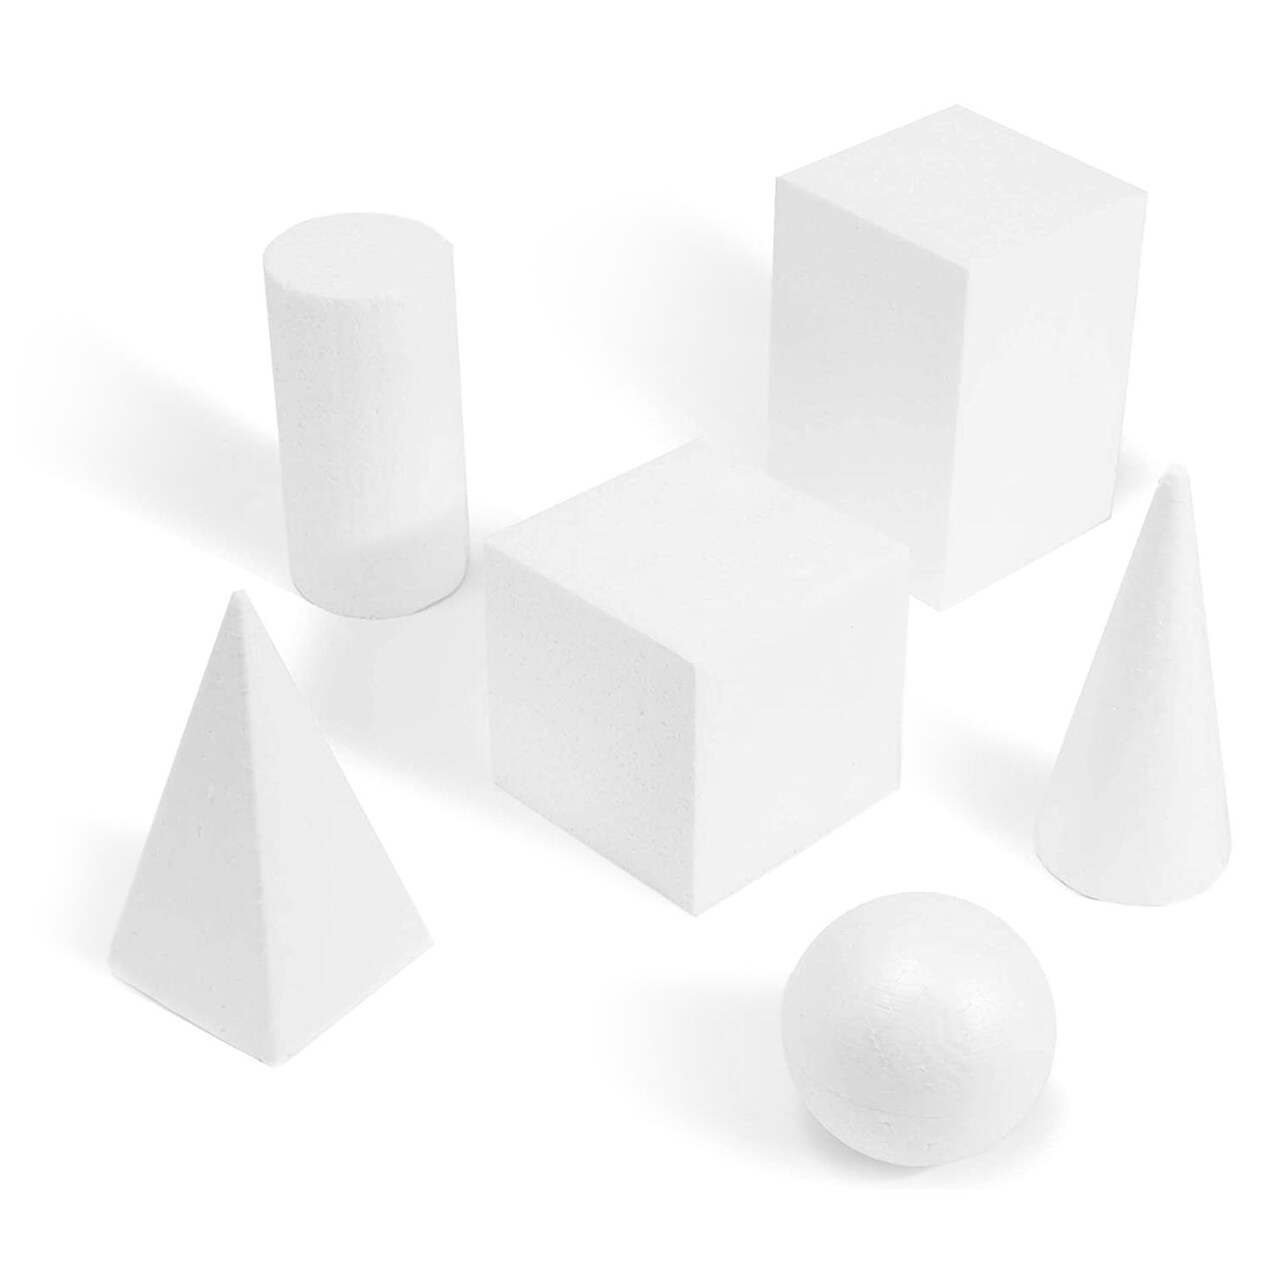 6 Pack Assorted 2.5 to 5.9 Inch Foam Geometric Shapes Craft Foam